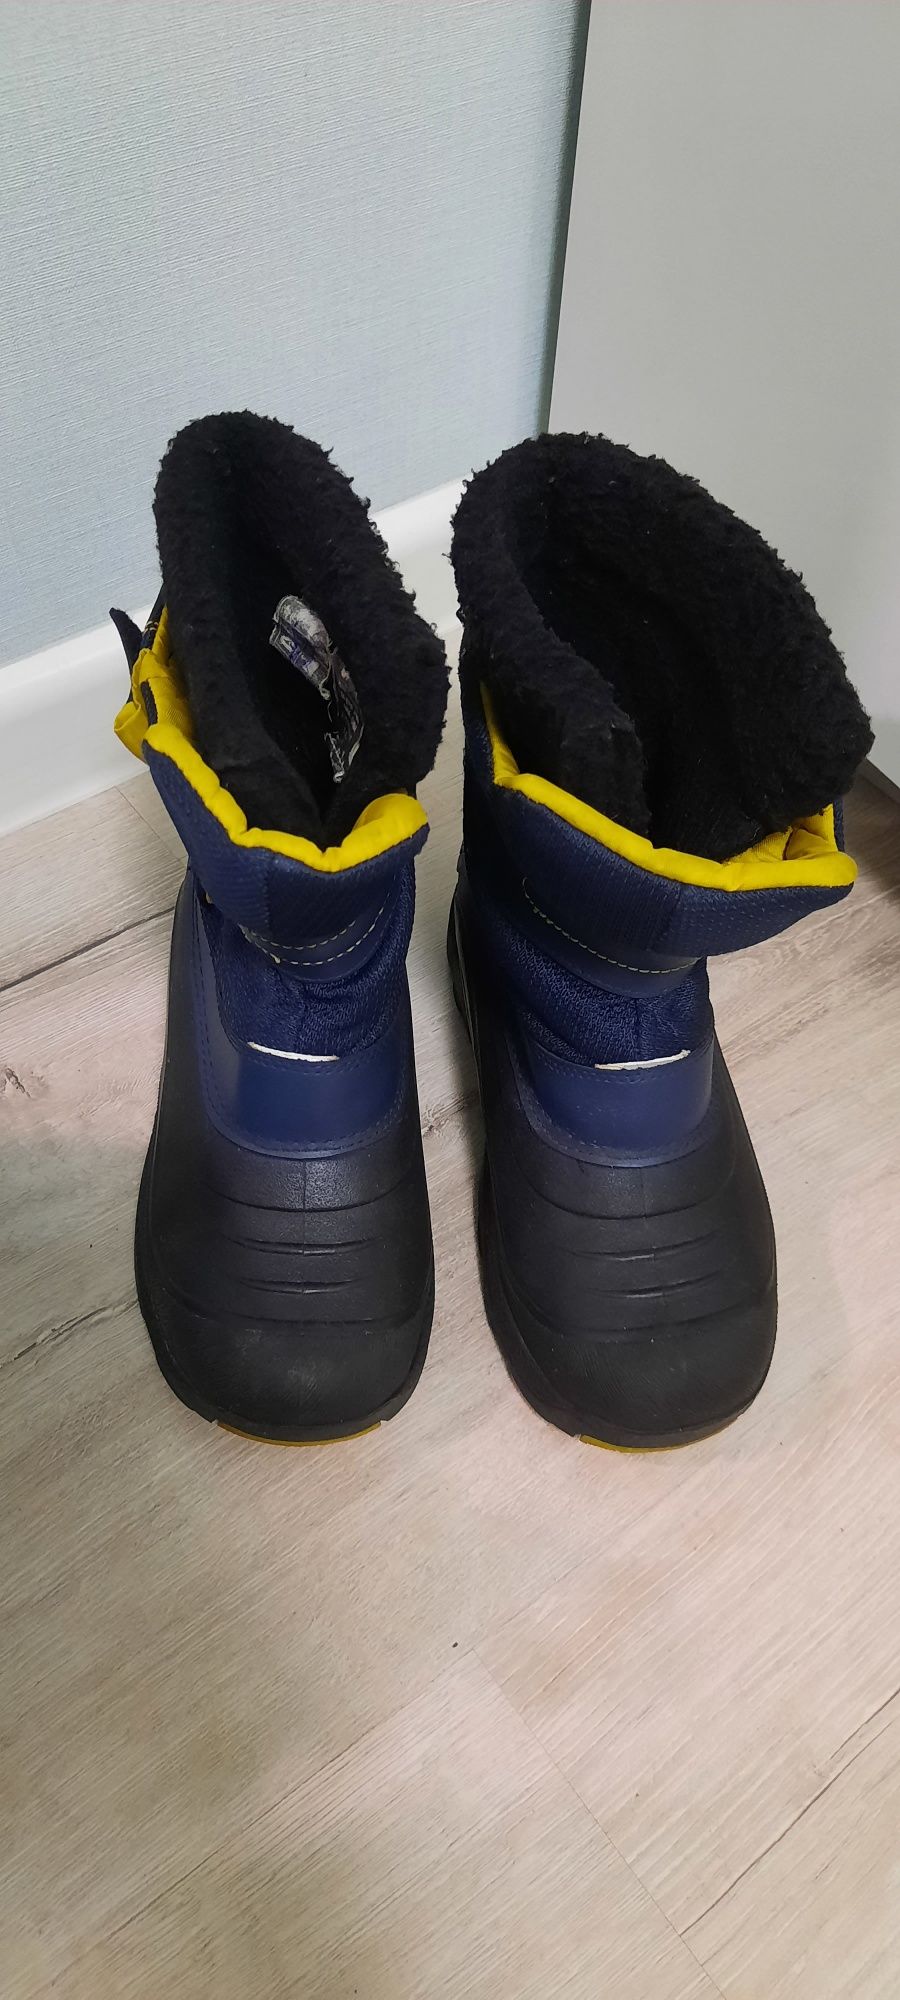 Резинові гумові чоботи Зимові сноубутси Khombu сапожки чобітки 36р